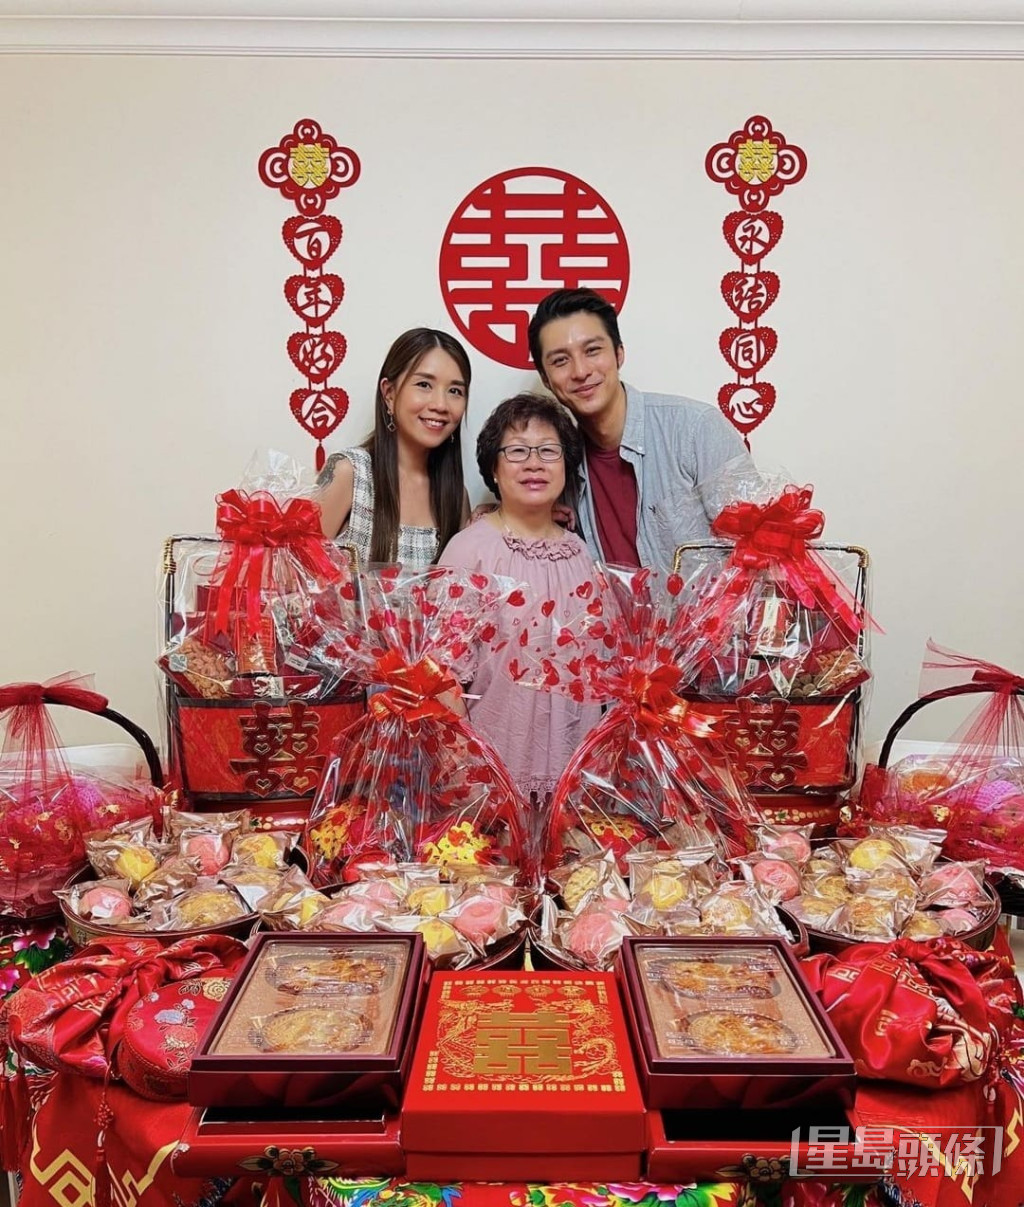 黄嘉乐与摄影师女友Samantha（江惠贤）求婚成功，亦跟足传统做过大礼仪式，满枱物资包括椰子篮、海味、生果、大量喜饼连龙凤饼都齐备。